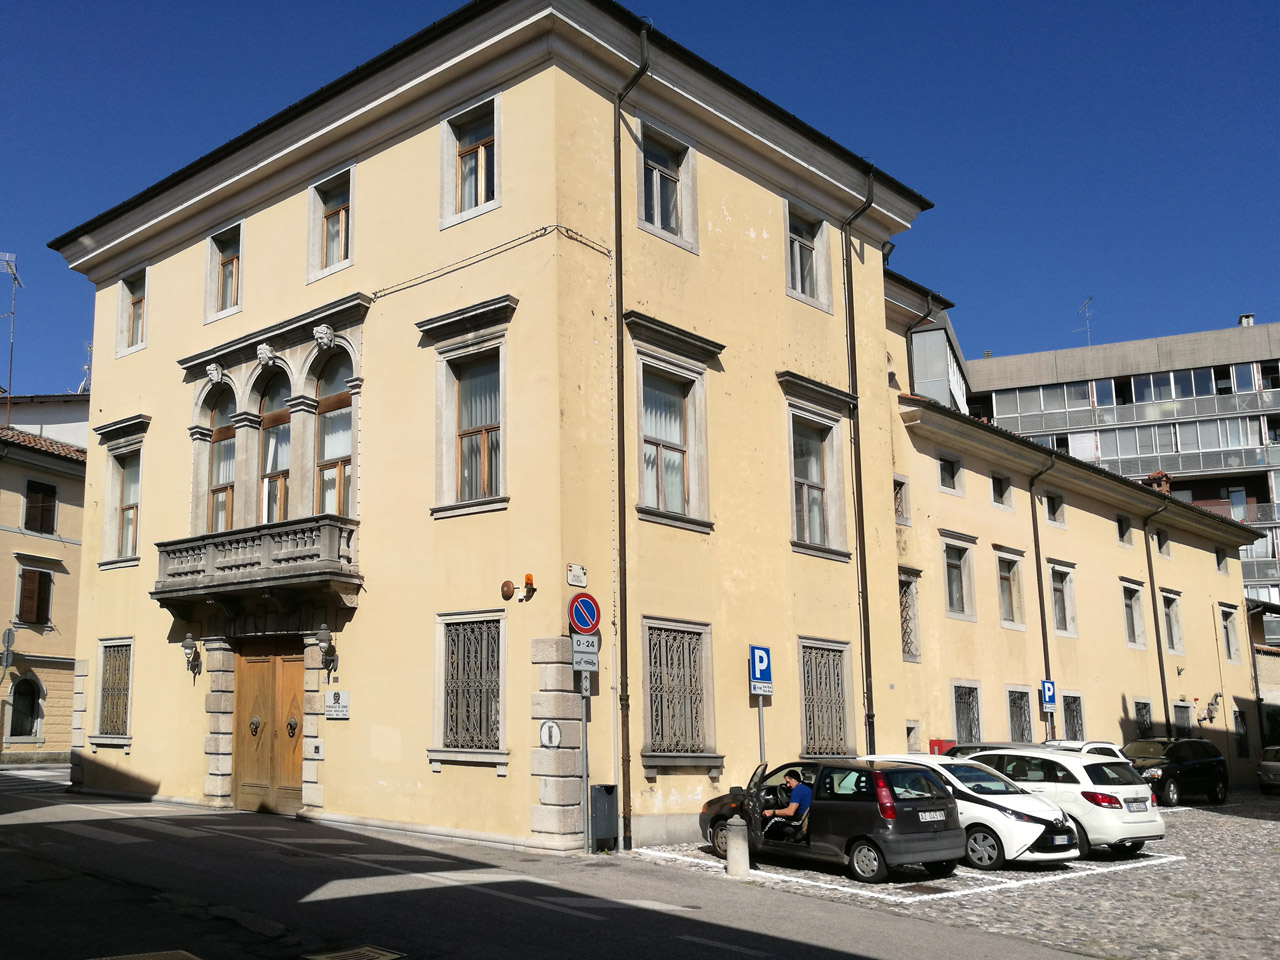 Palazzo Nussi, ex casema "N. Rosati" ed ex sezione distaccata del Tribunale di Udine (caserma, militare) - Cividale del Friuli (UD) 